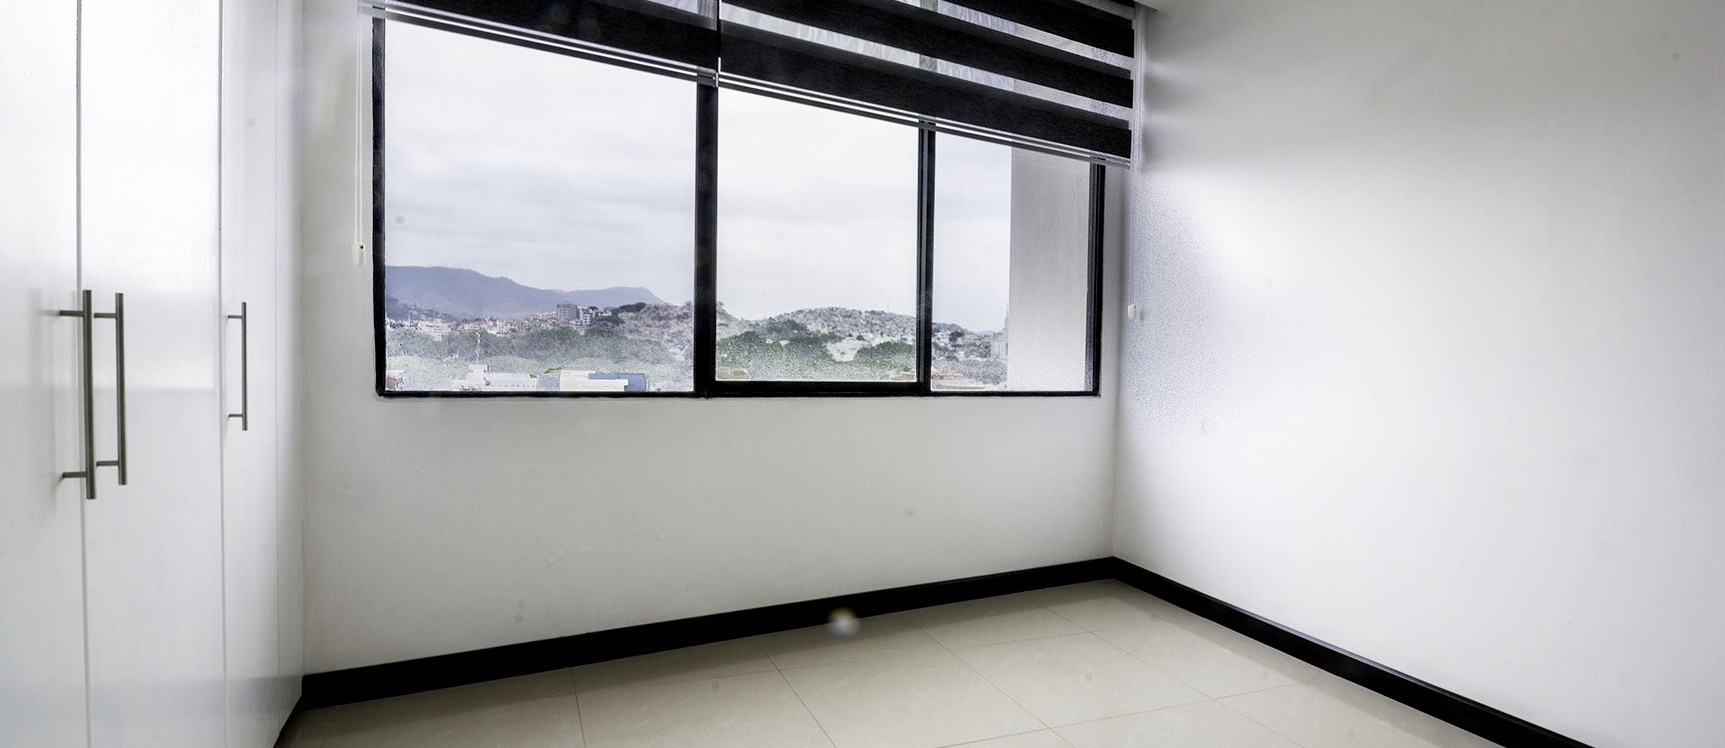 GeoBienes - Departamento en alquiler en Torre Colón I norte de Guayaquil - Plusvalia Guayaquil Casas de venta y alquiler Inmobiliaria Ecuador